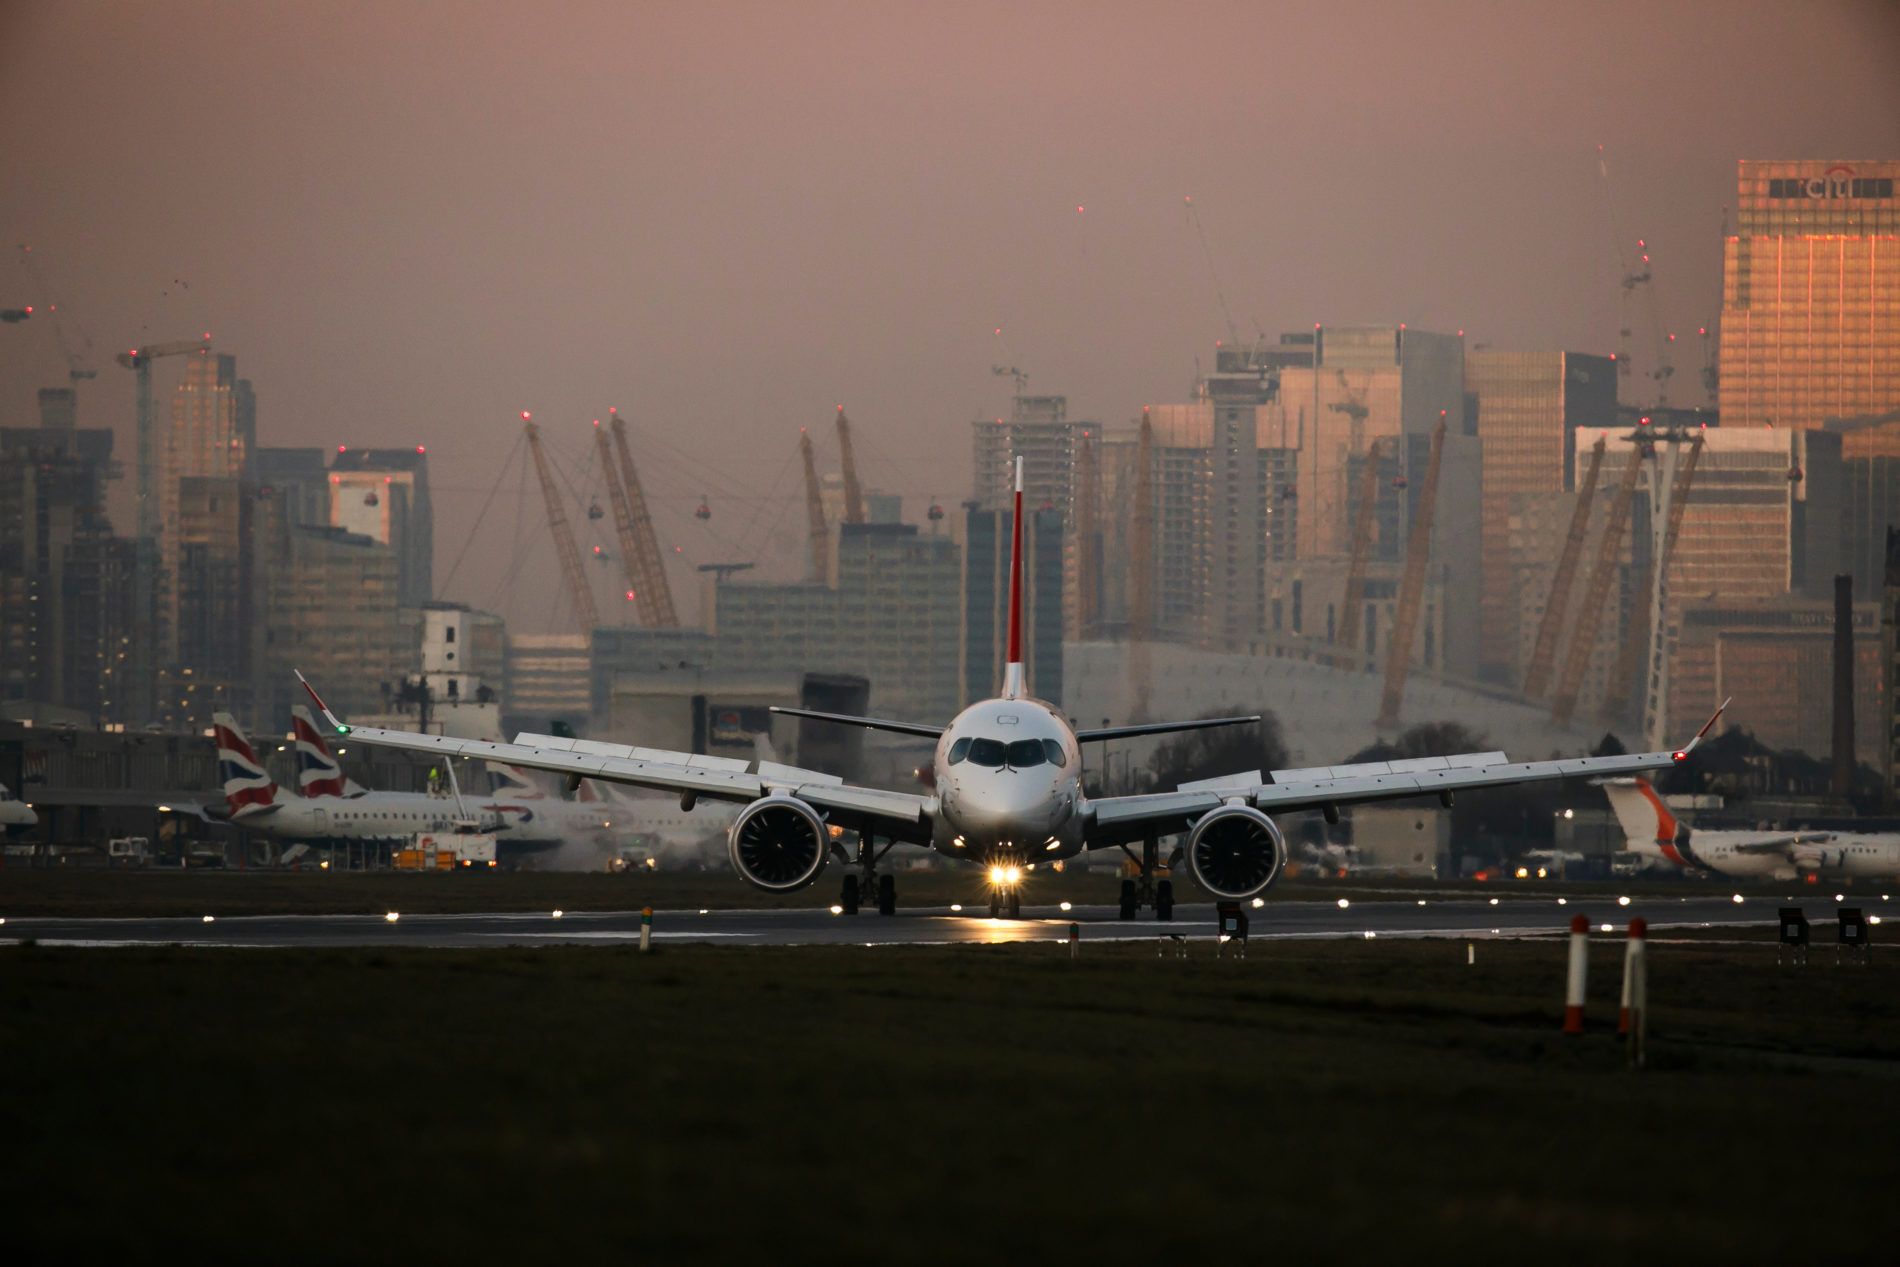 London City Airport Jet facing towards camera